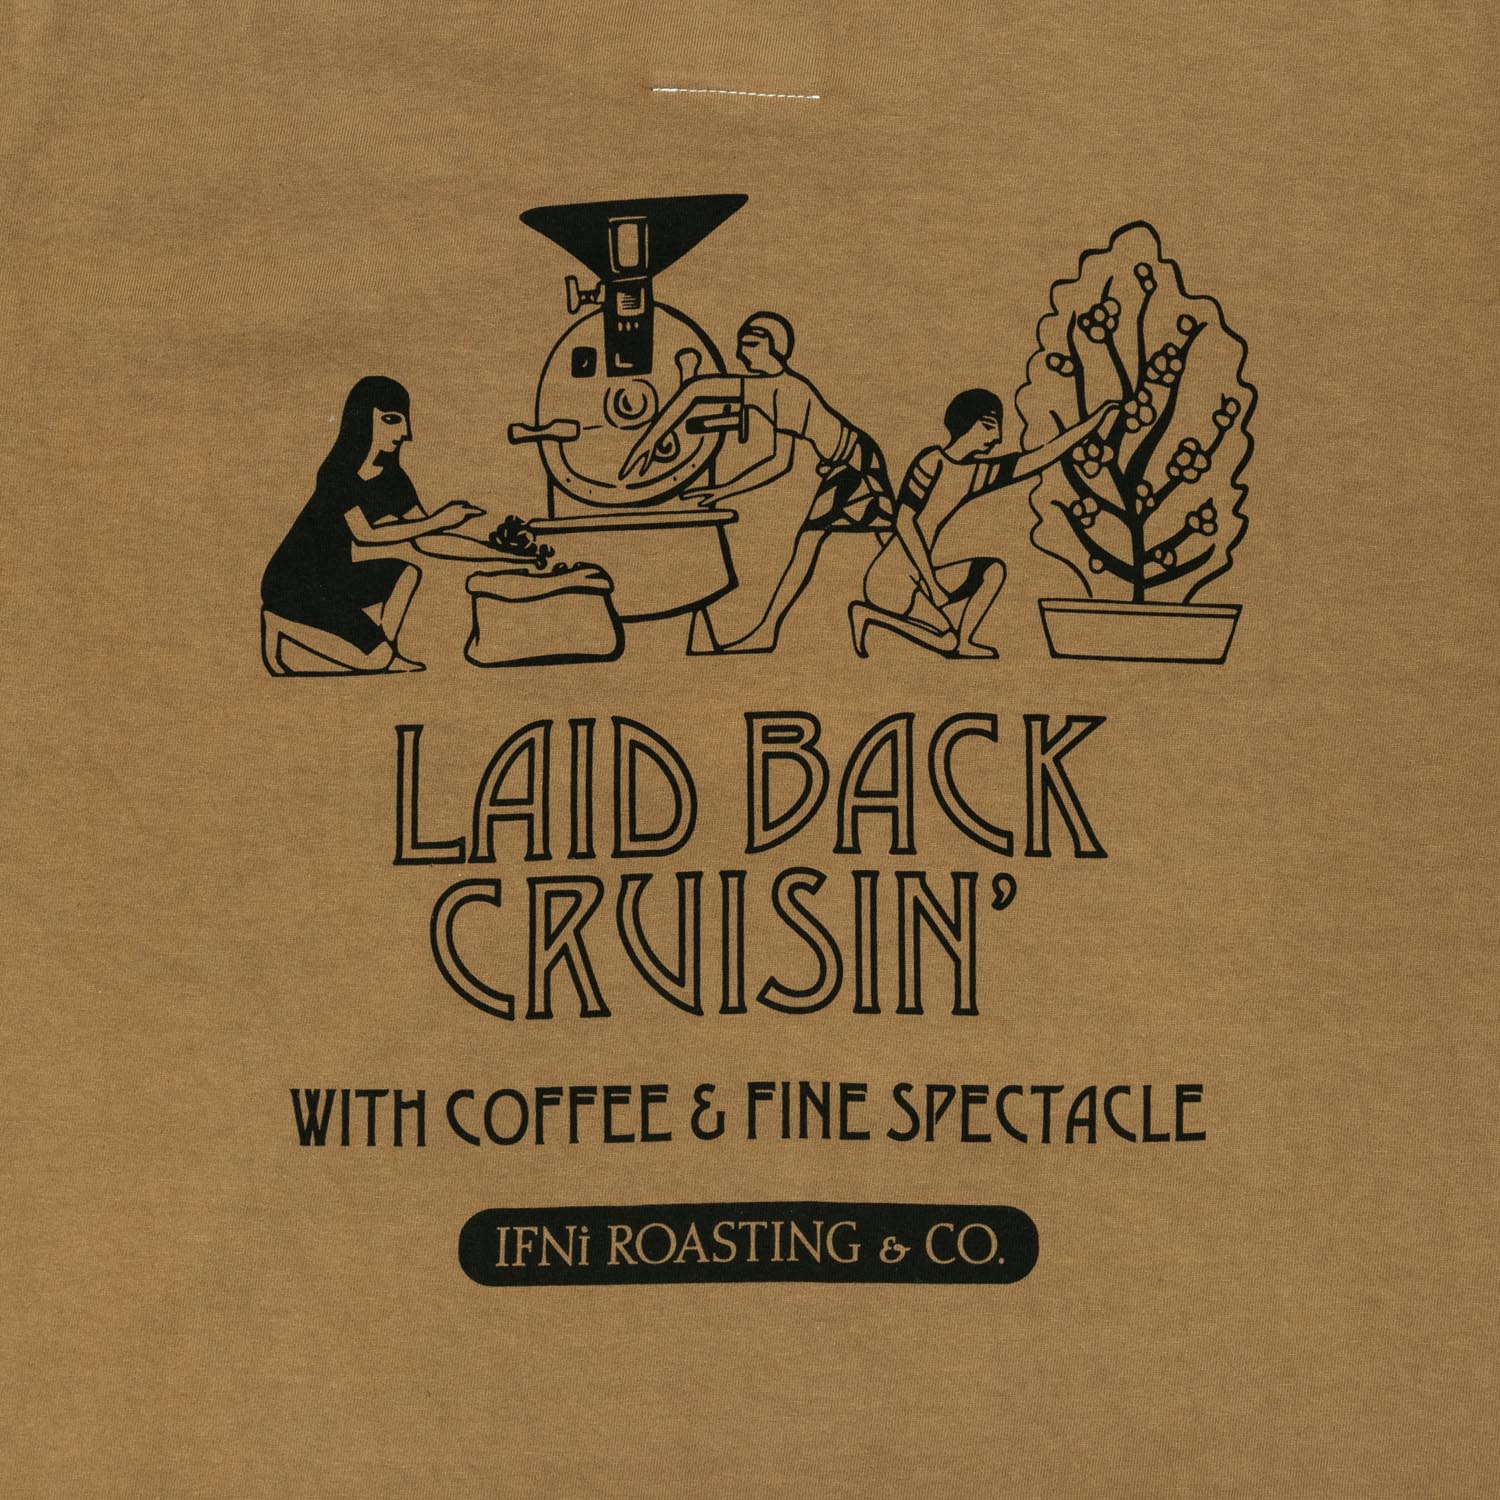 LAID BACK CRUISIN’ LS designed by Kotaro Imoto